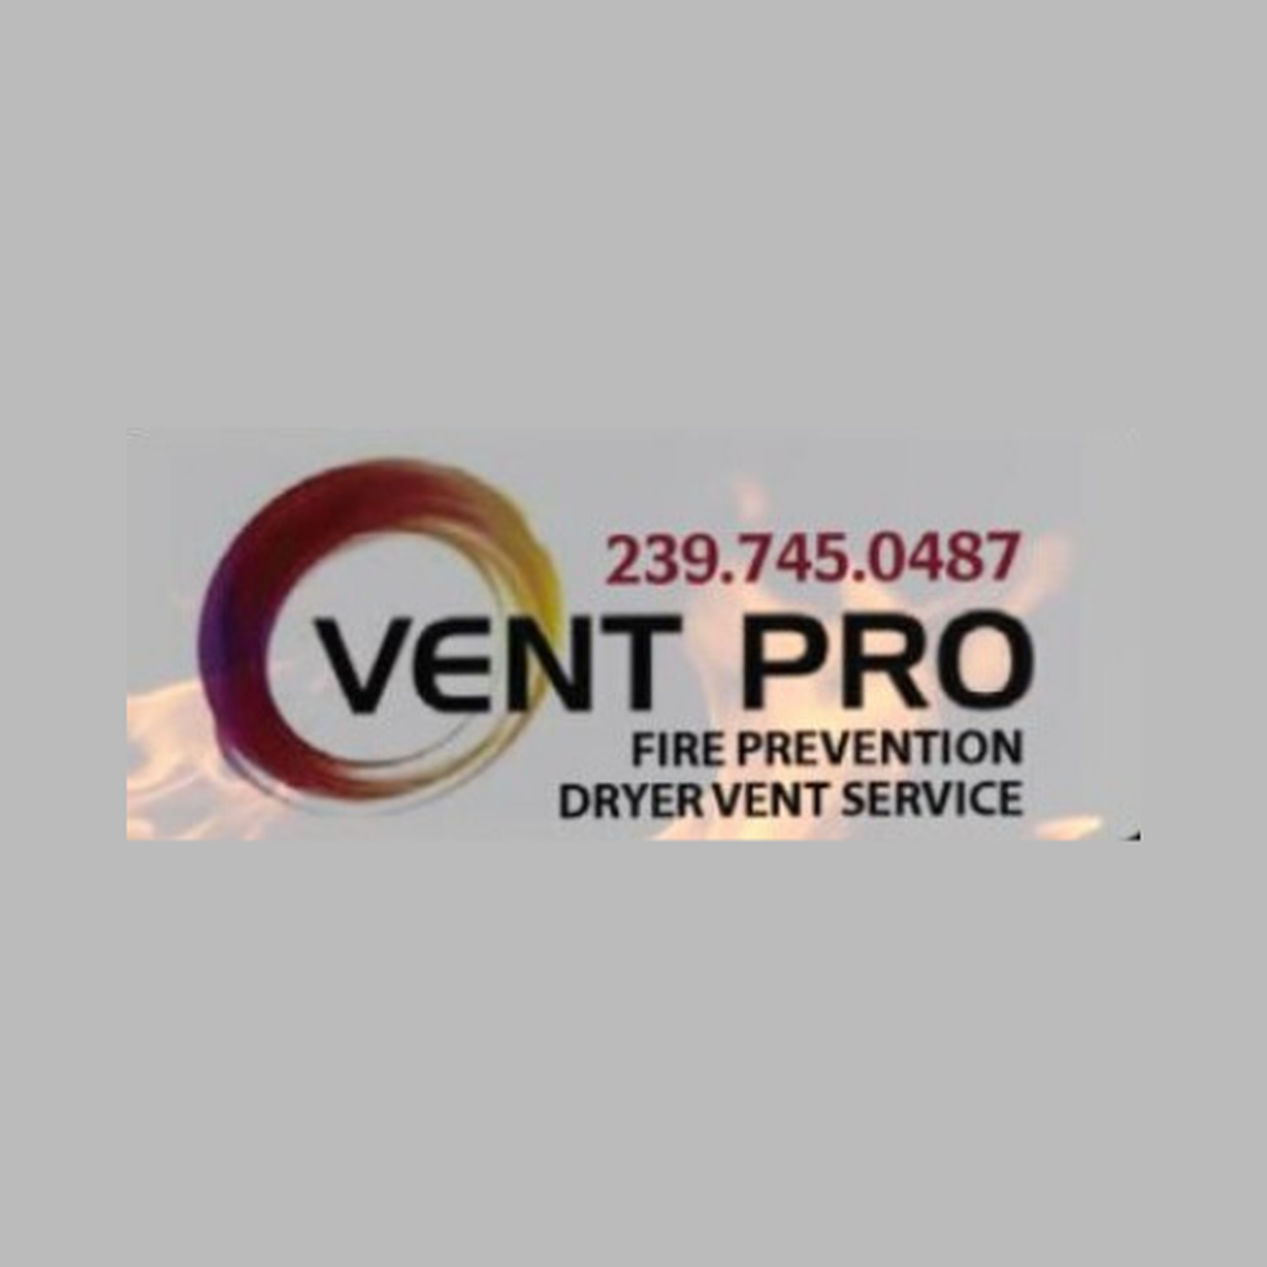 Vent Pro| Fire Prevention & Dryer vent service